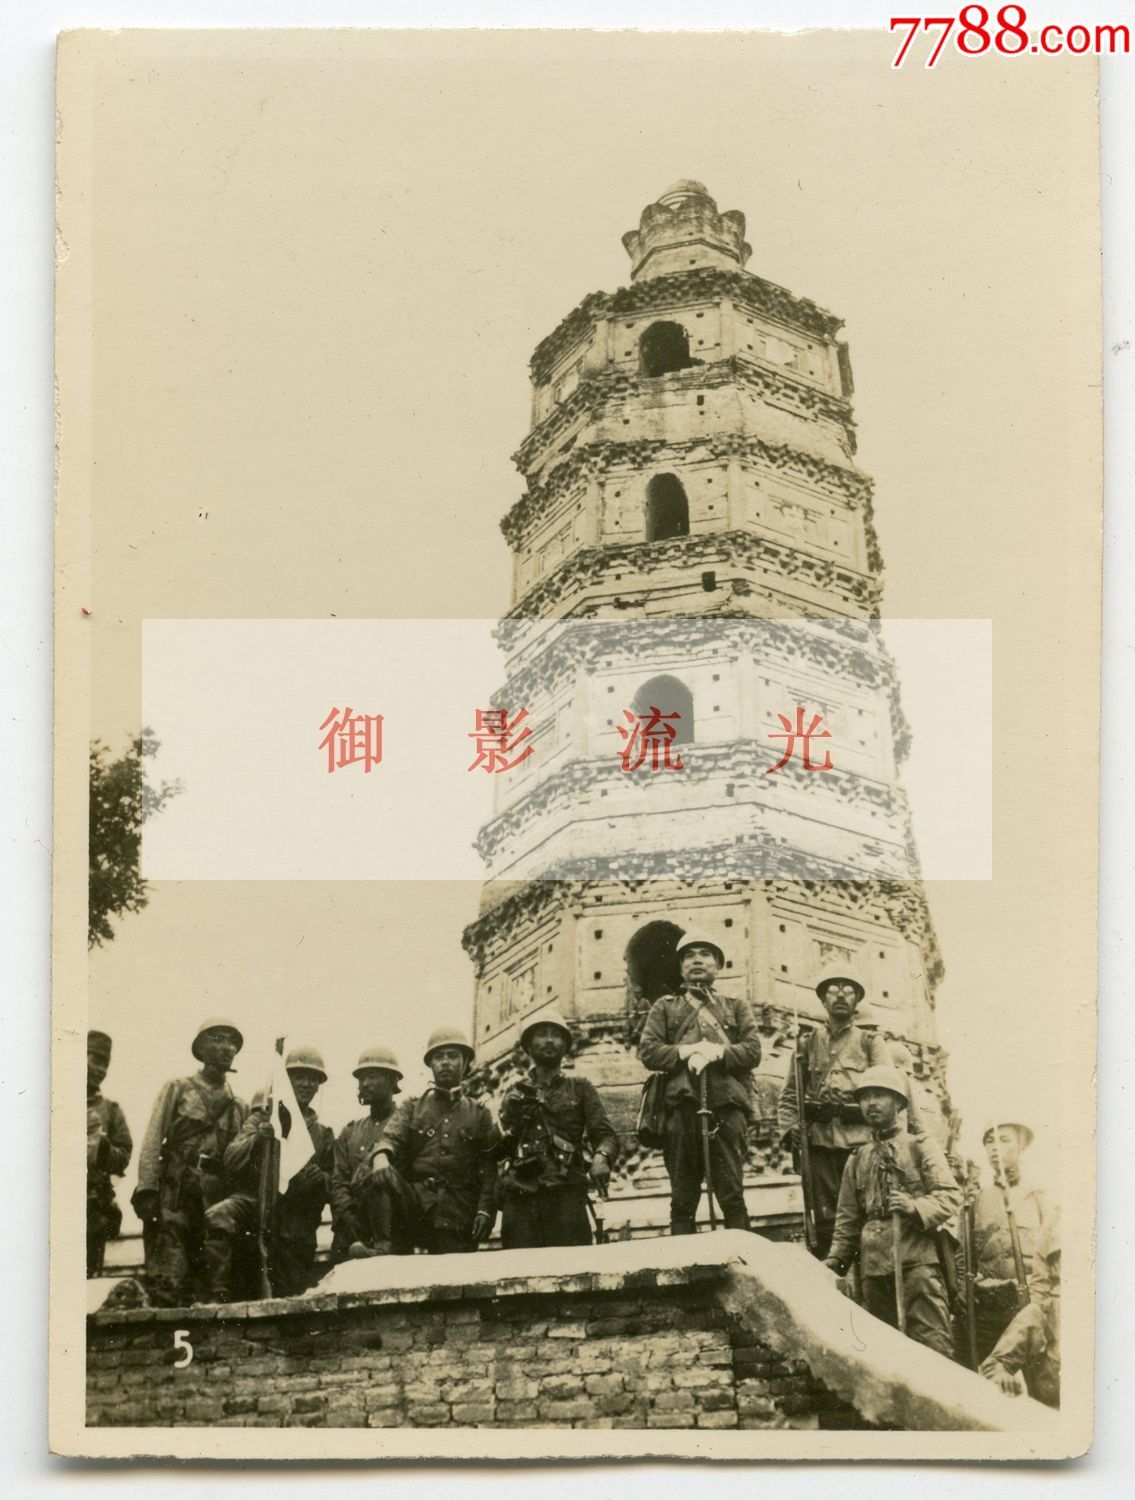 1937年8月13日侵华日军占领北平(北京)房山良